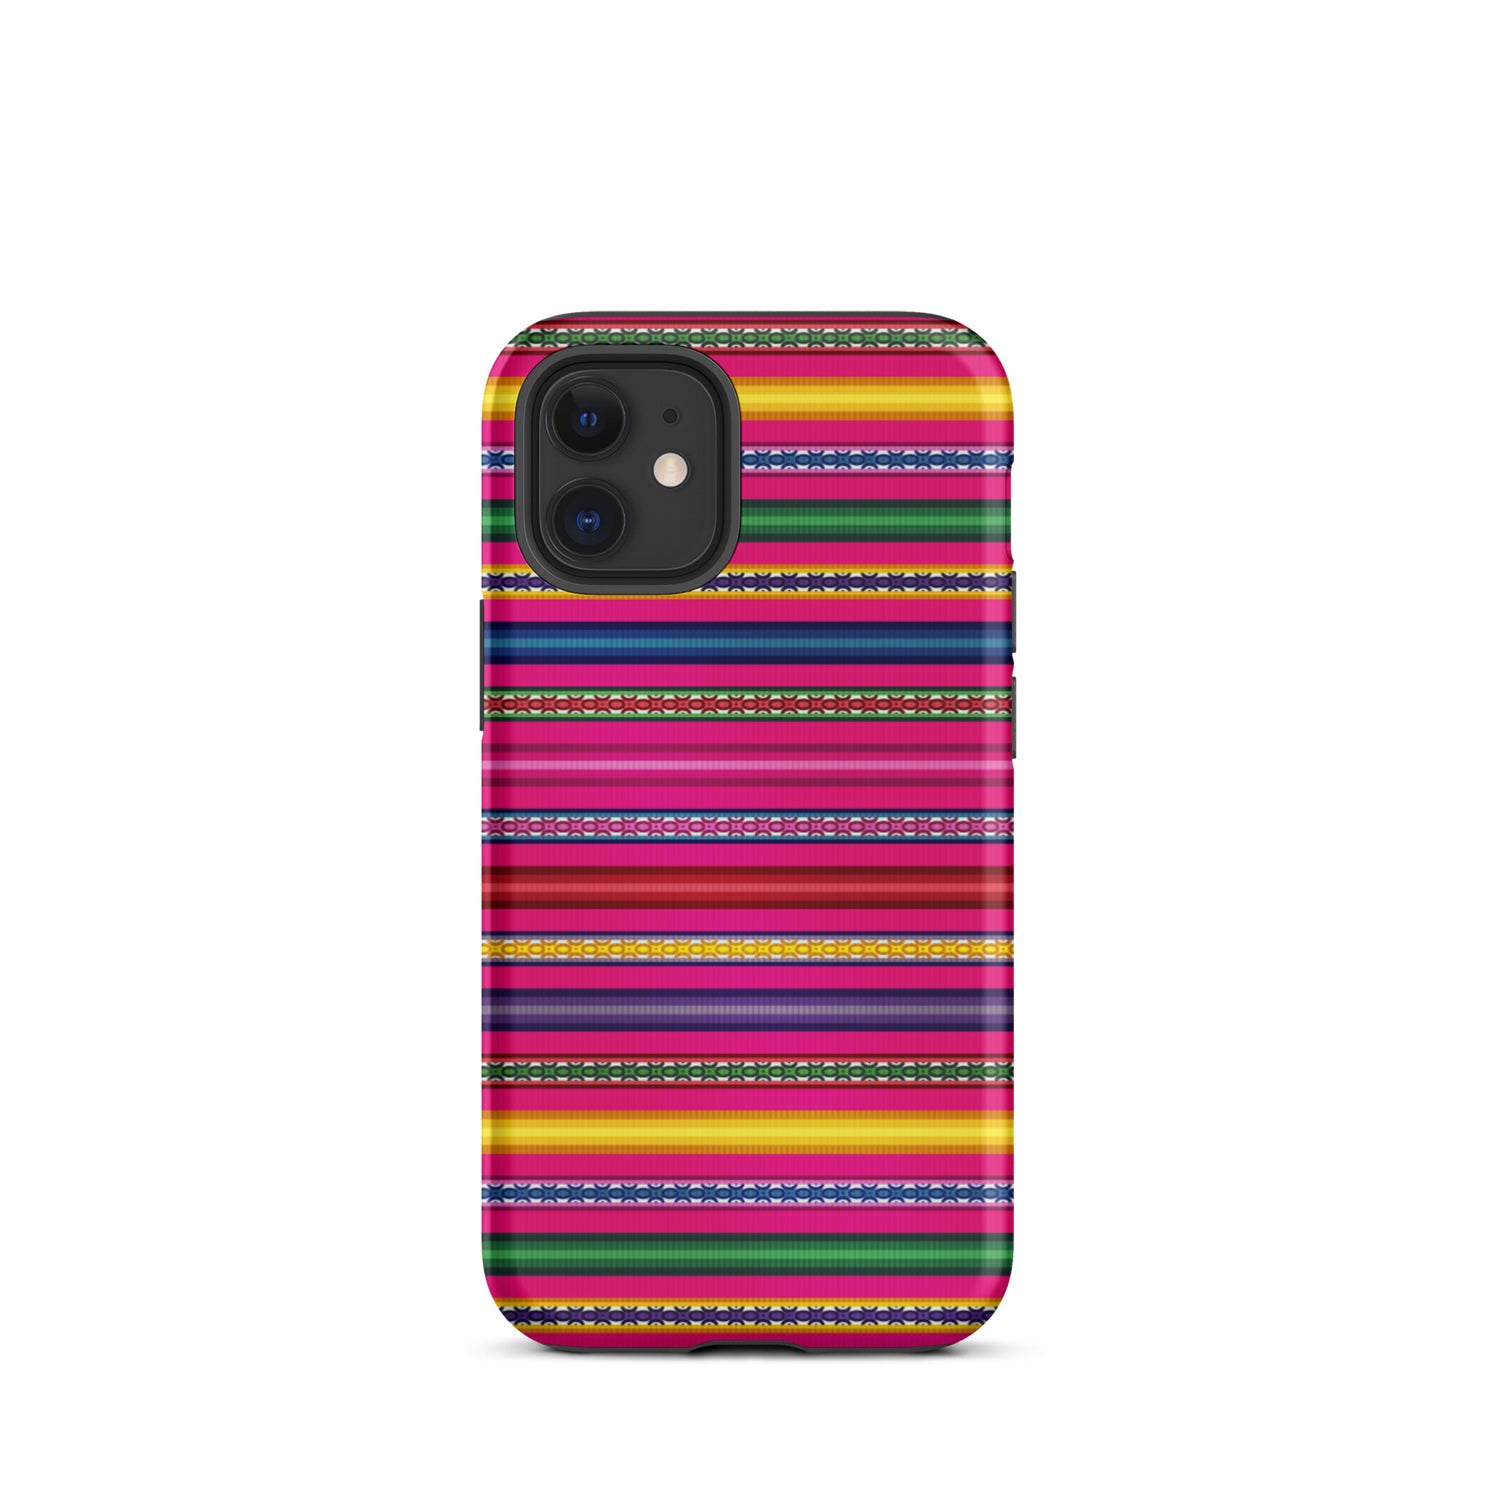 Peruvian Tough iPhone 12 Mini case